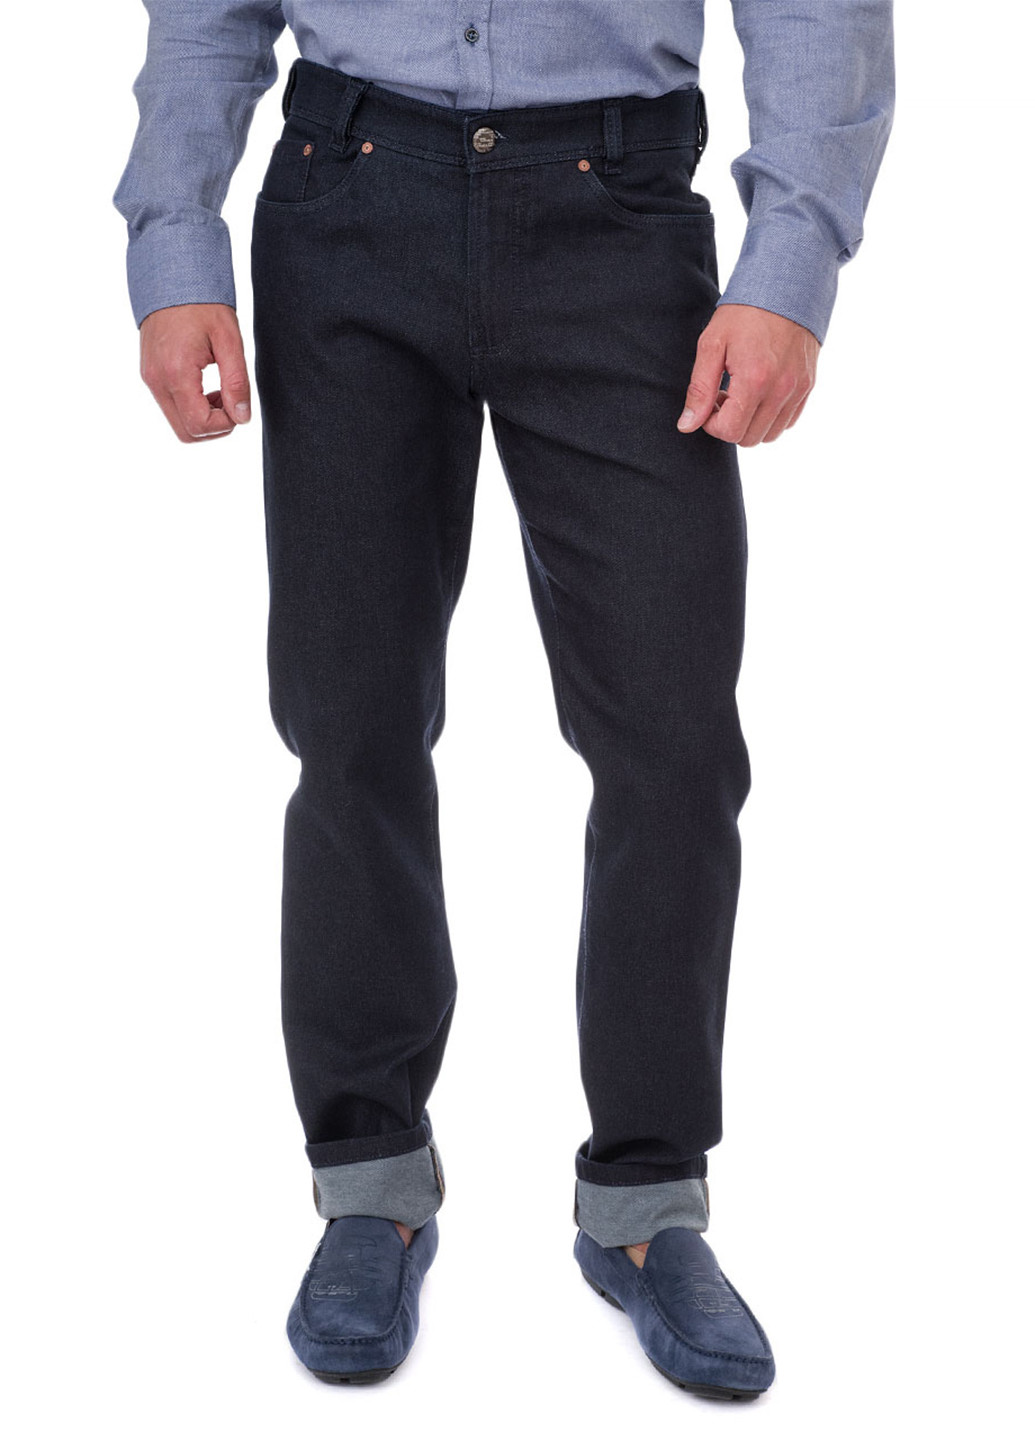 Черные демисезонные прямые джинсы Gardeur